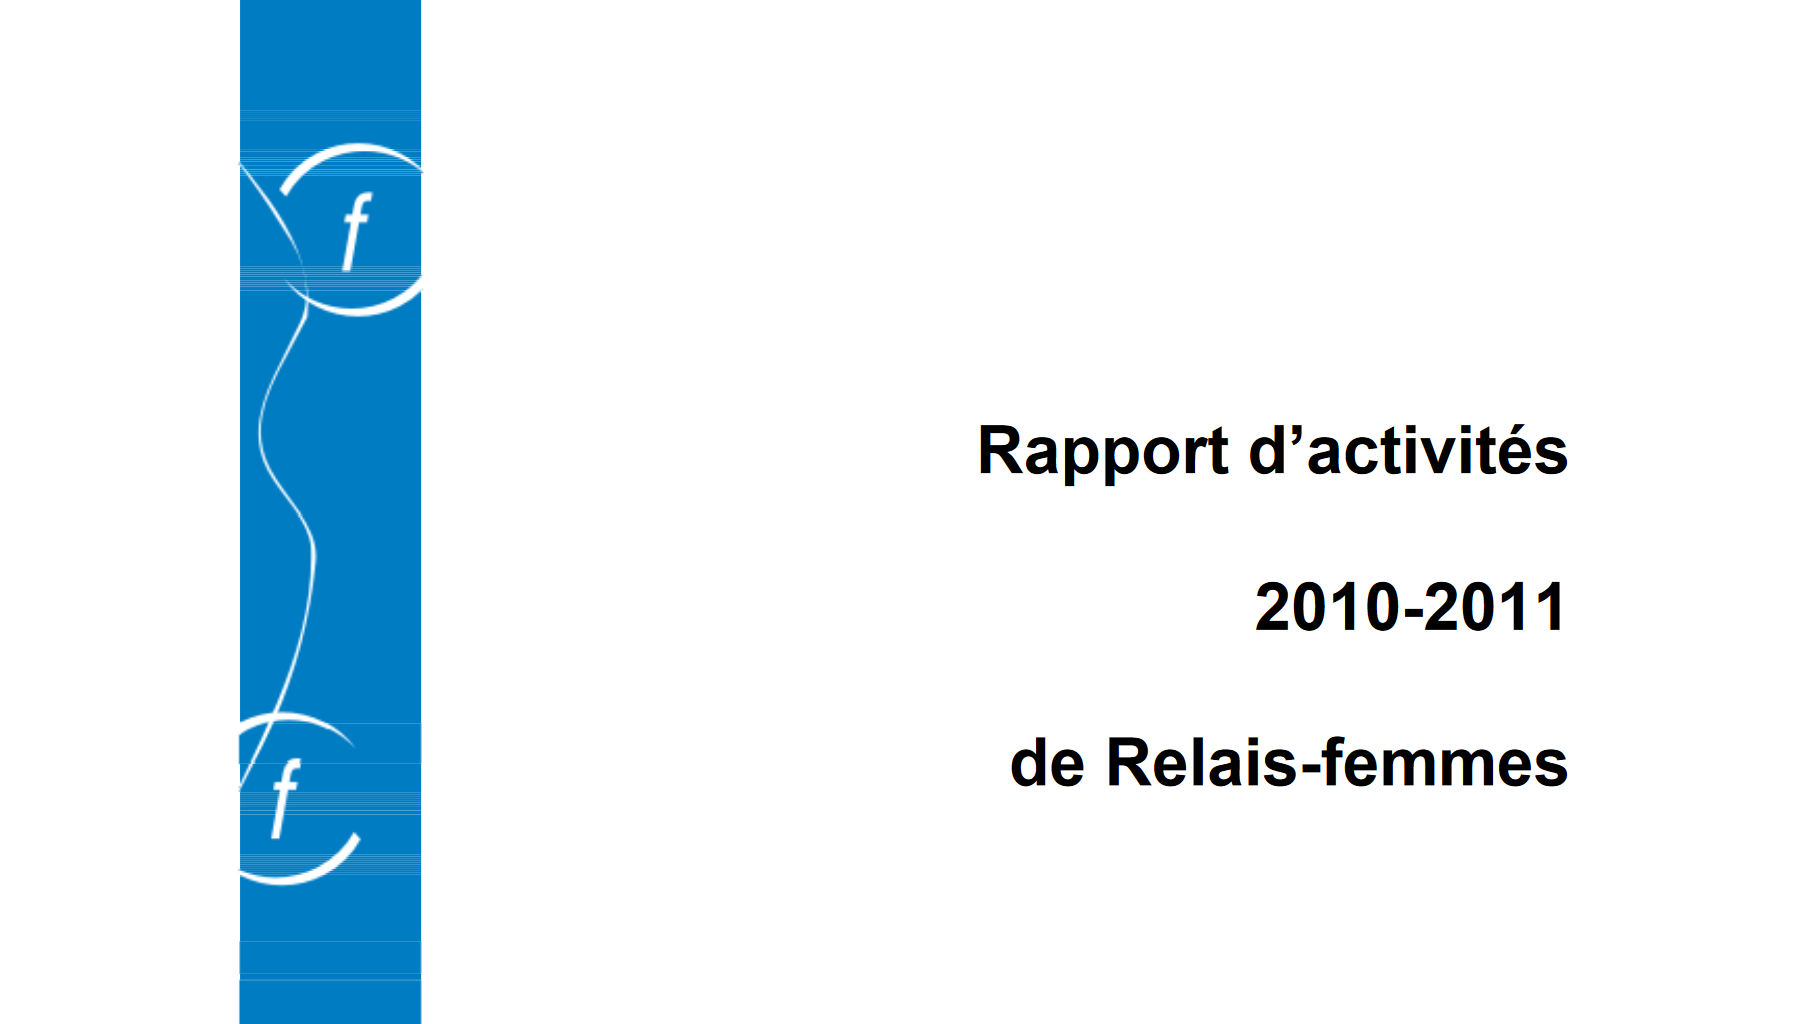 Rapports d'activités 2010-2011